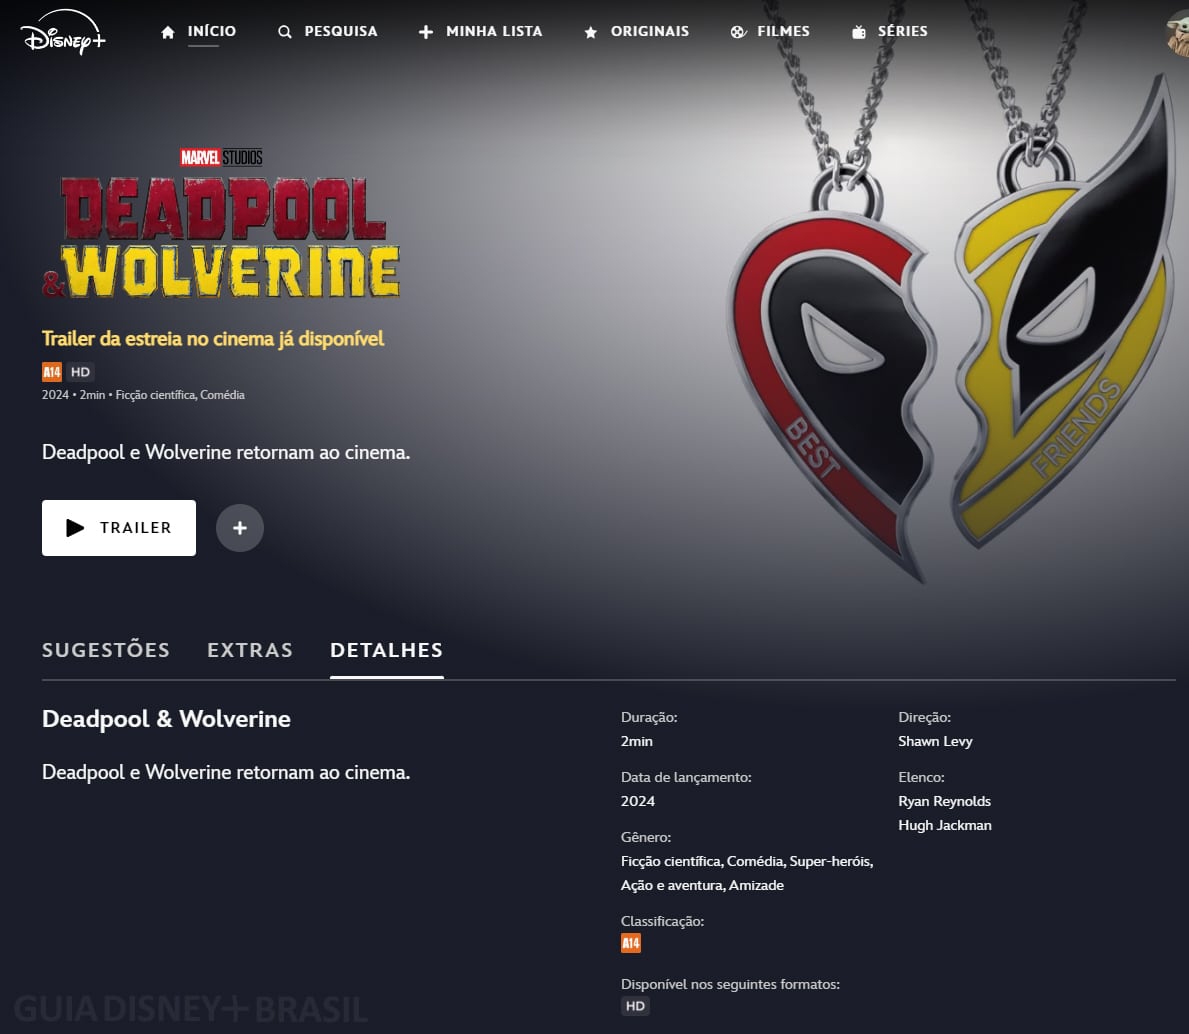 Pagina-Deadpool-e-Wolverine-no-Disney-Plus A página de Deadpool & Wolverine já está disponível no Disney+